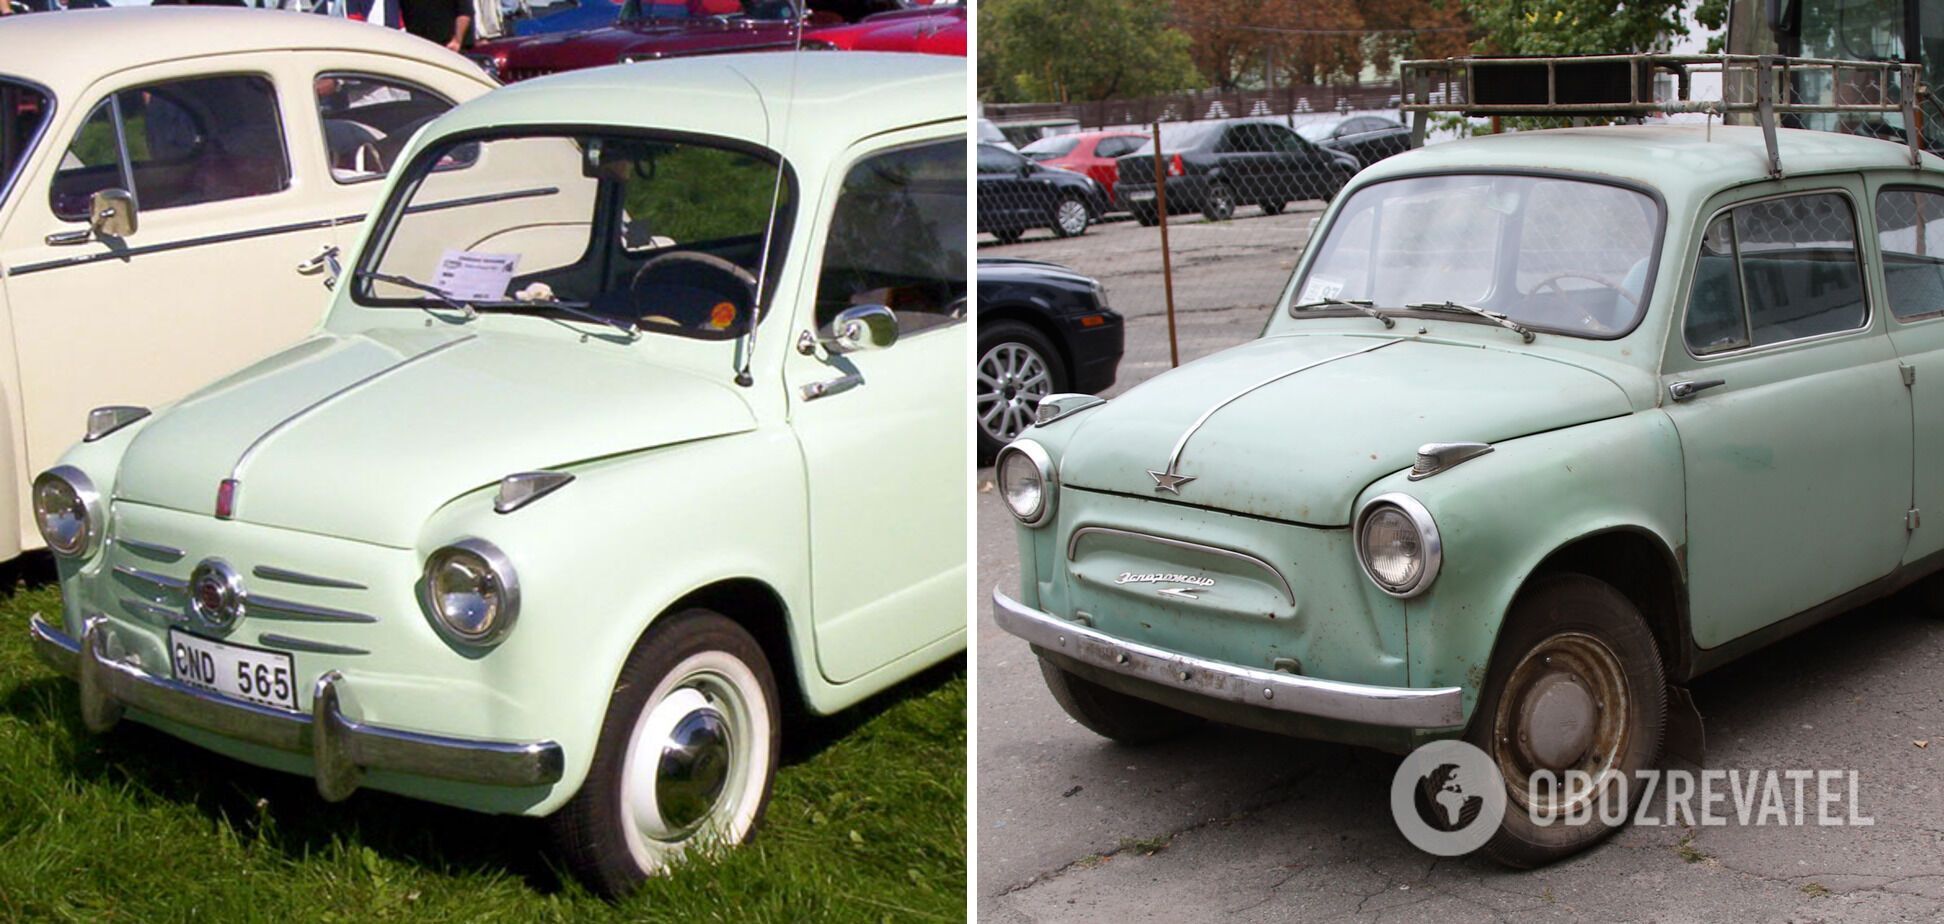 Слева – итальянский "Fiat 600", а справа – "ЗАЗ-965".